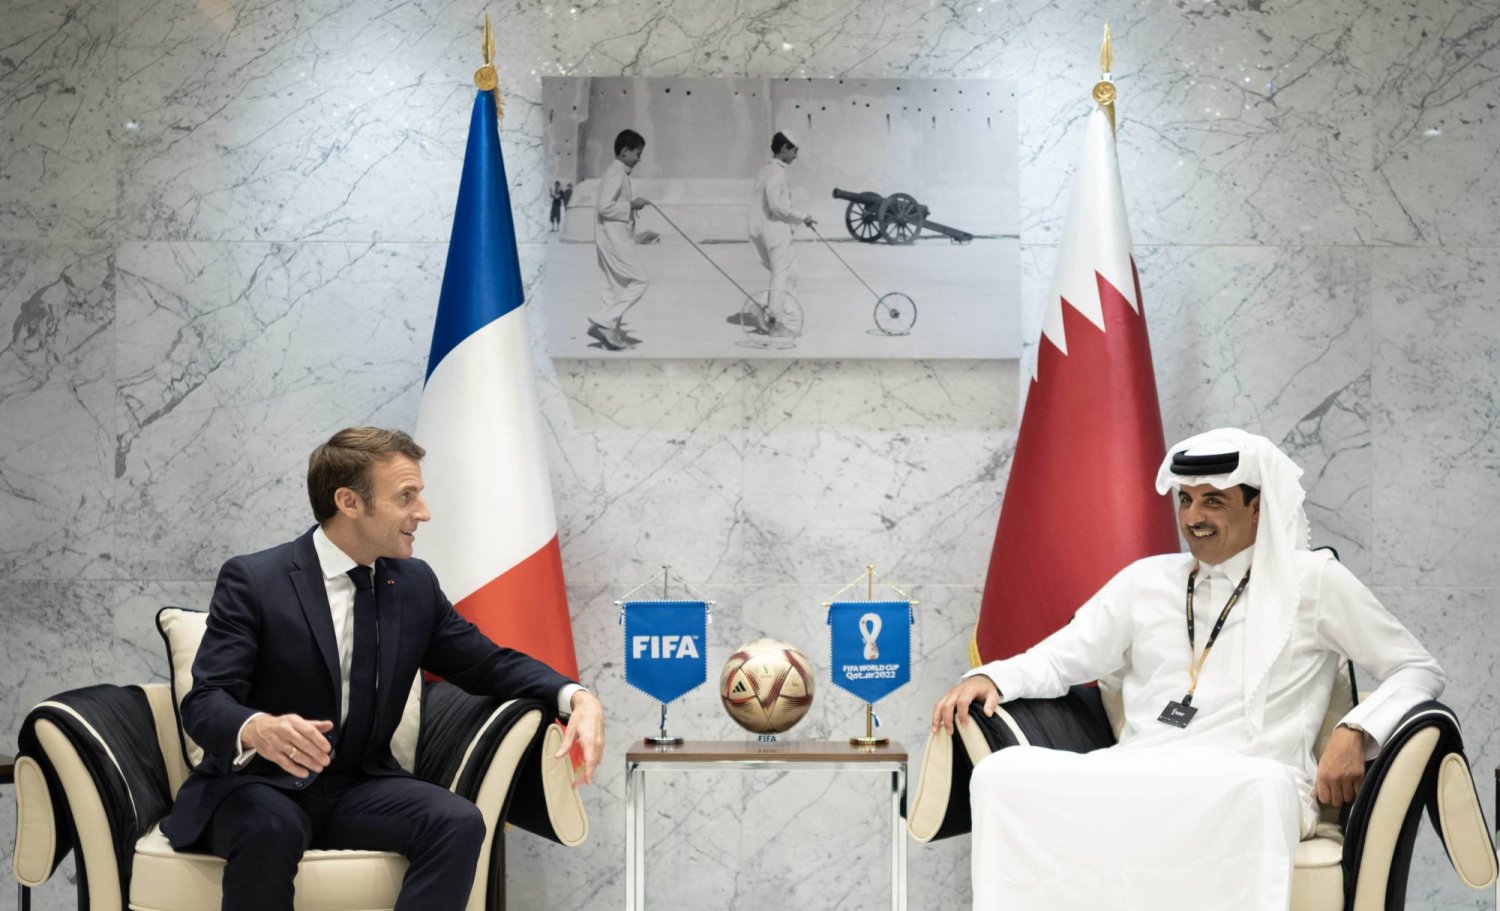 الشيخ تميم بن حمد آل ثاني مع الرئيس الفرنسي إيمانويل ماكرون خلال زيارة الأخير لقطر أثناء بطولة كأس العالم FIFA قطر 2022 (الديوان الأميري القطري)